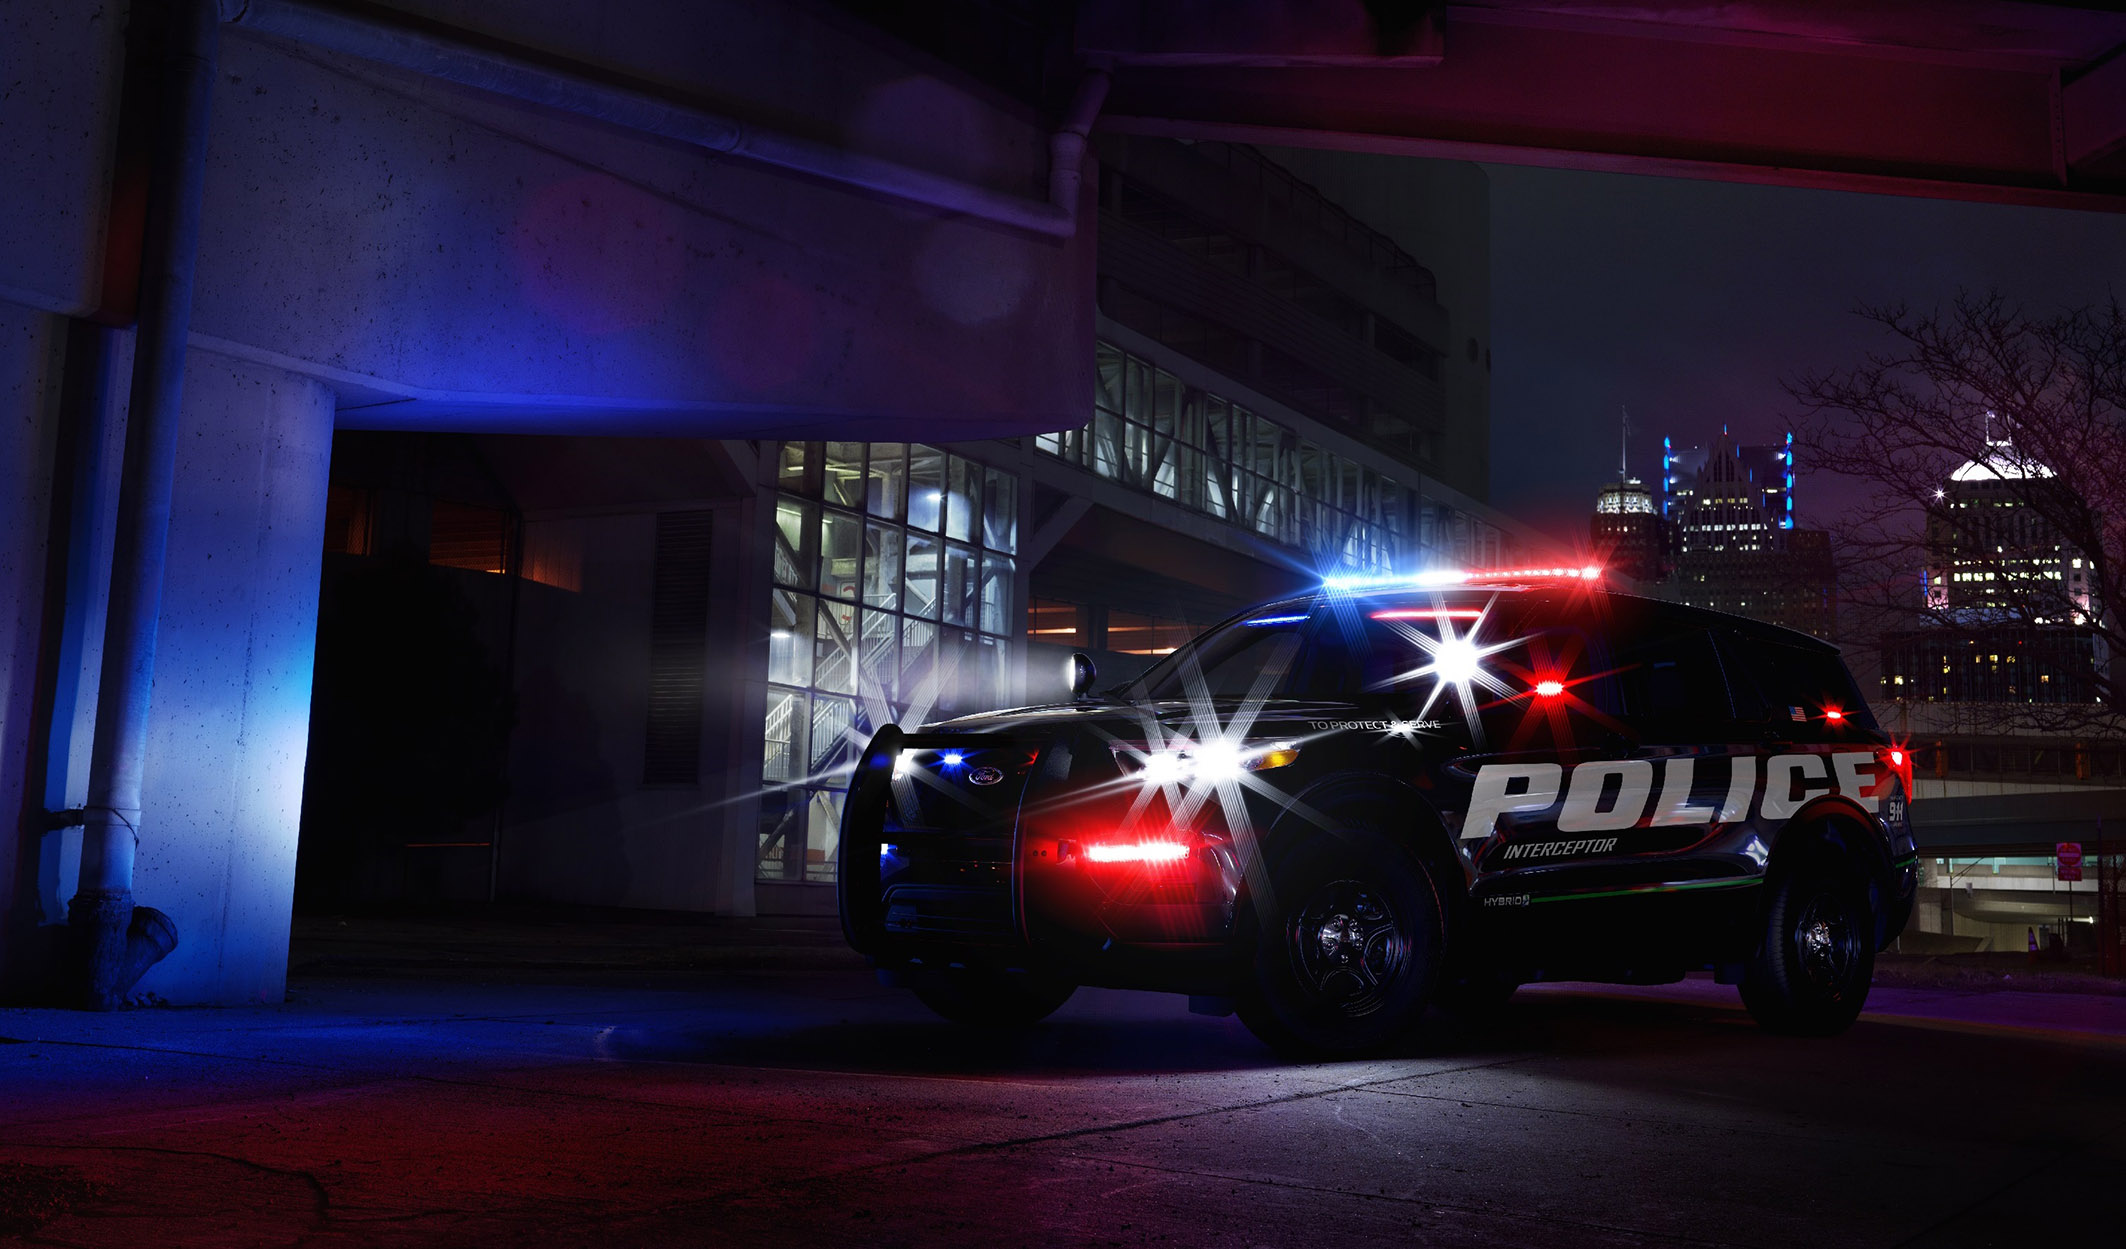 Outra vista do Ford Interceptor linha SUV híbridos para a polícia